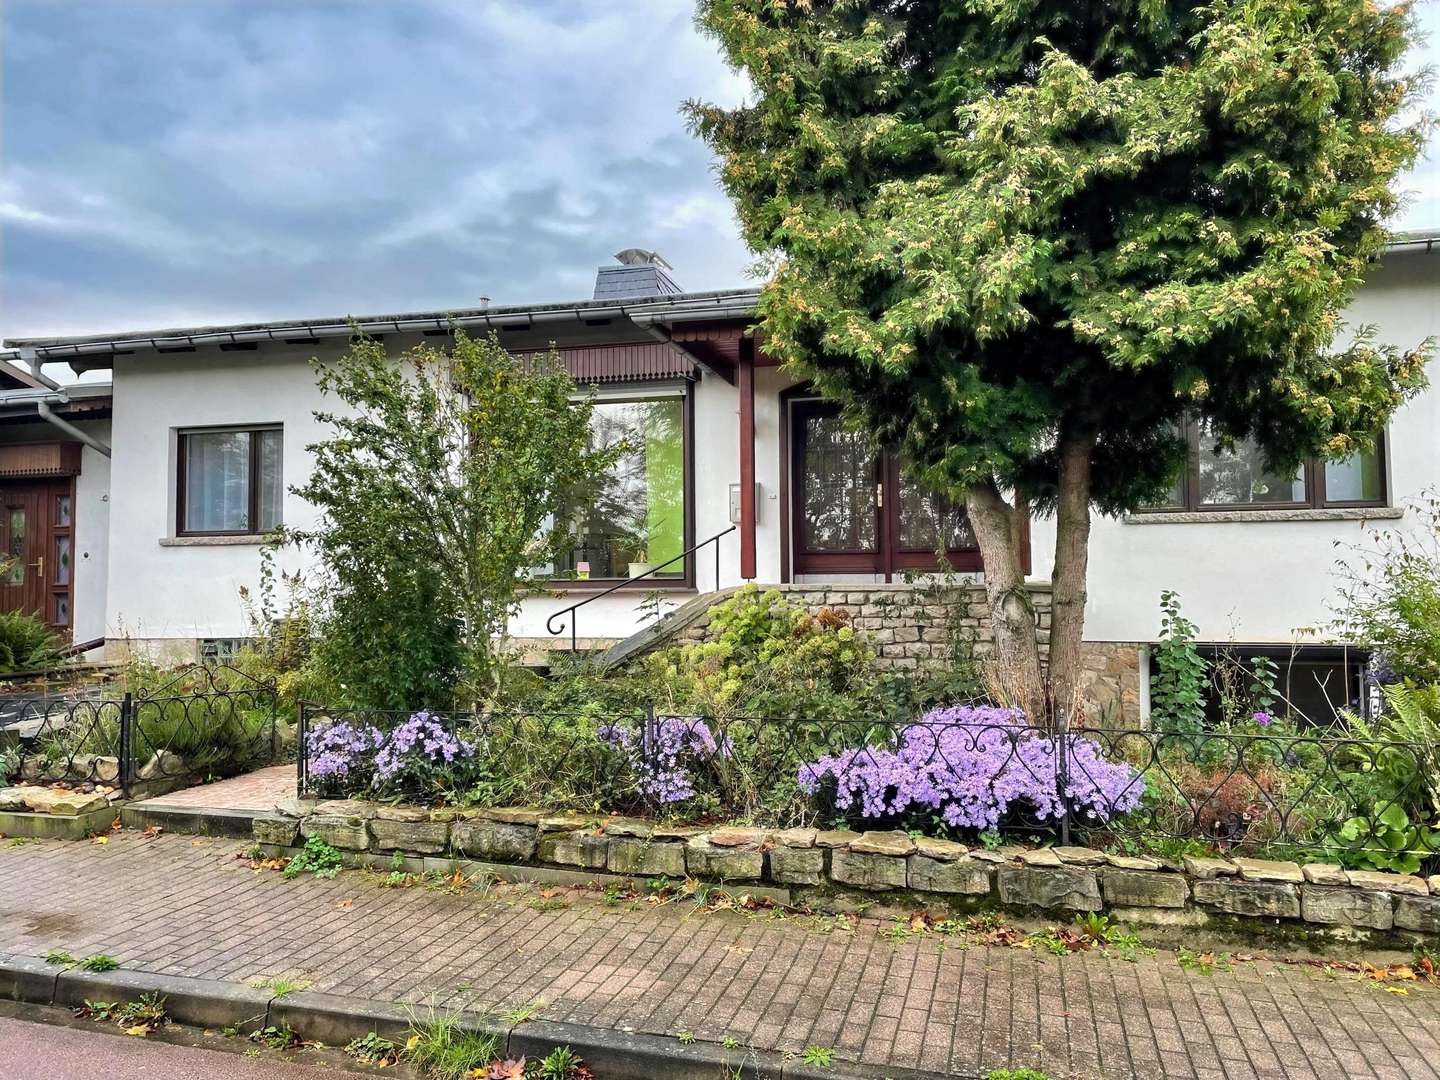 null - Einfamilienhaus in 06406 Bernburg mit 170m² kaufen